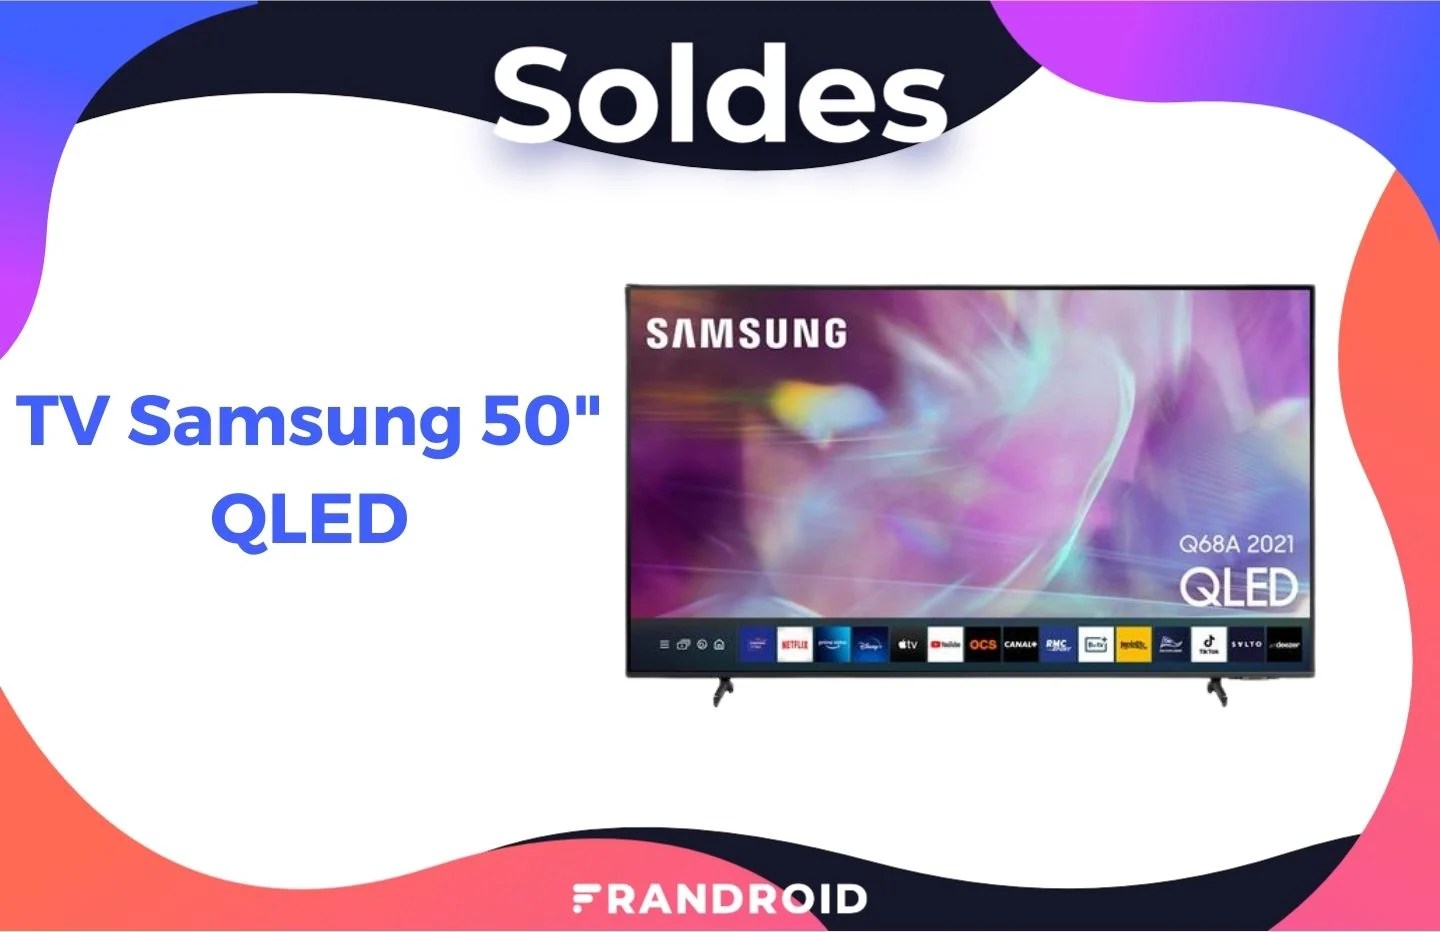 Le prix de ce TV Samsung QLED 4K de 50 pouces est en chute libre